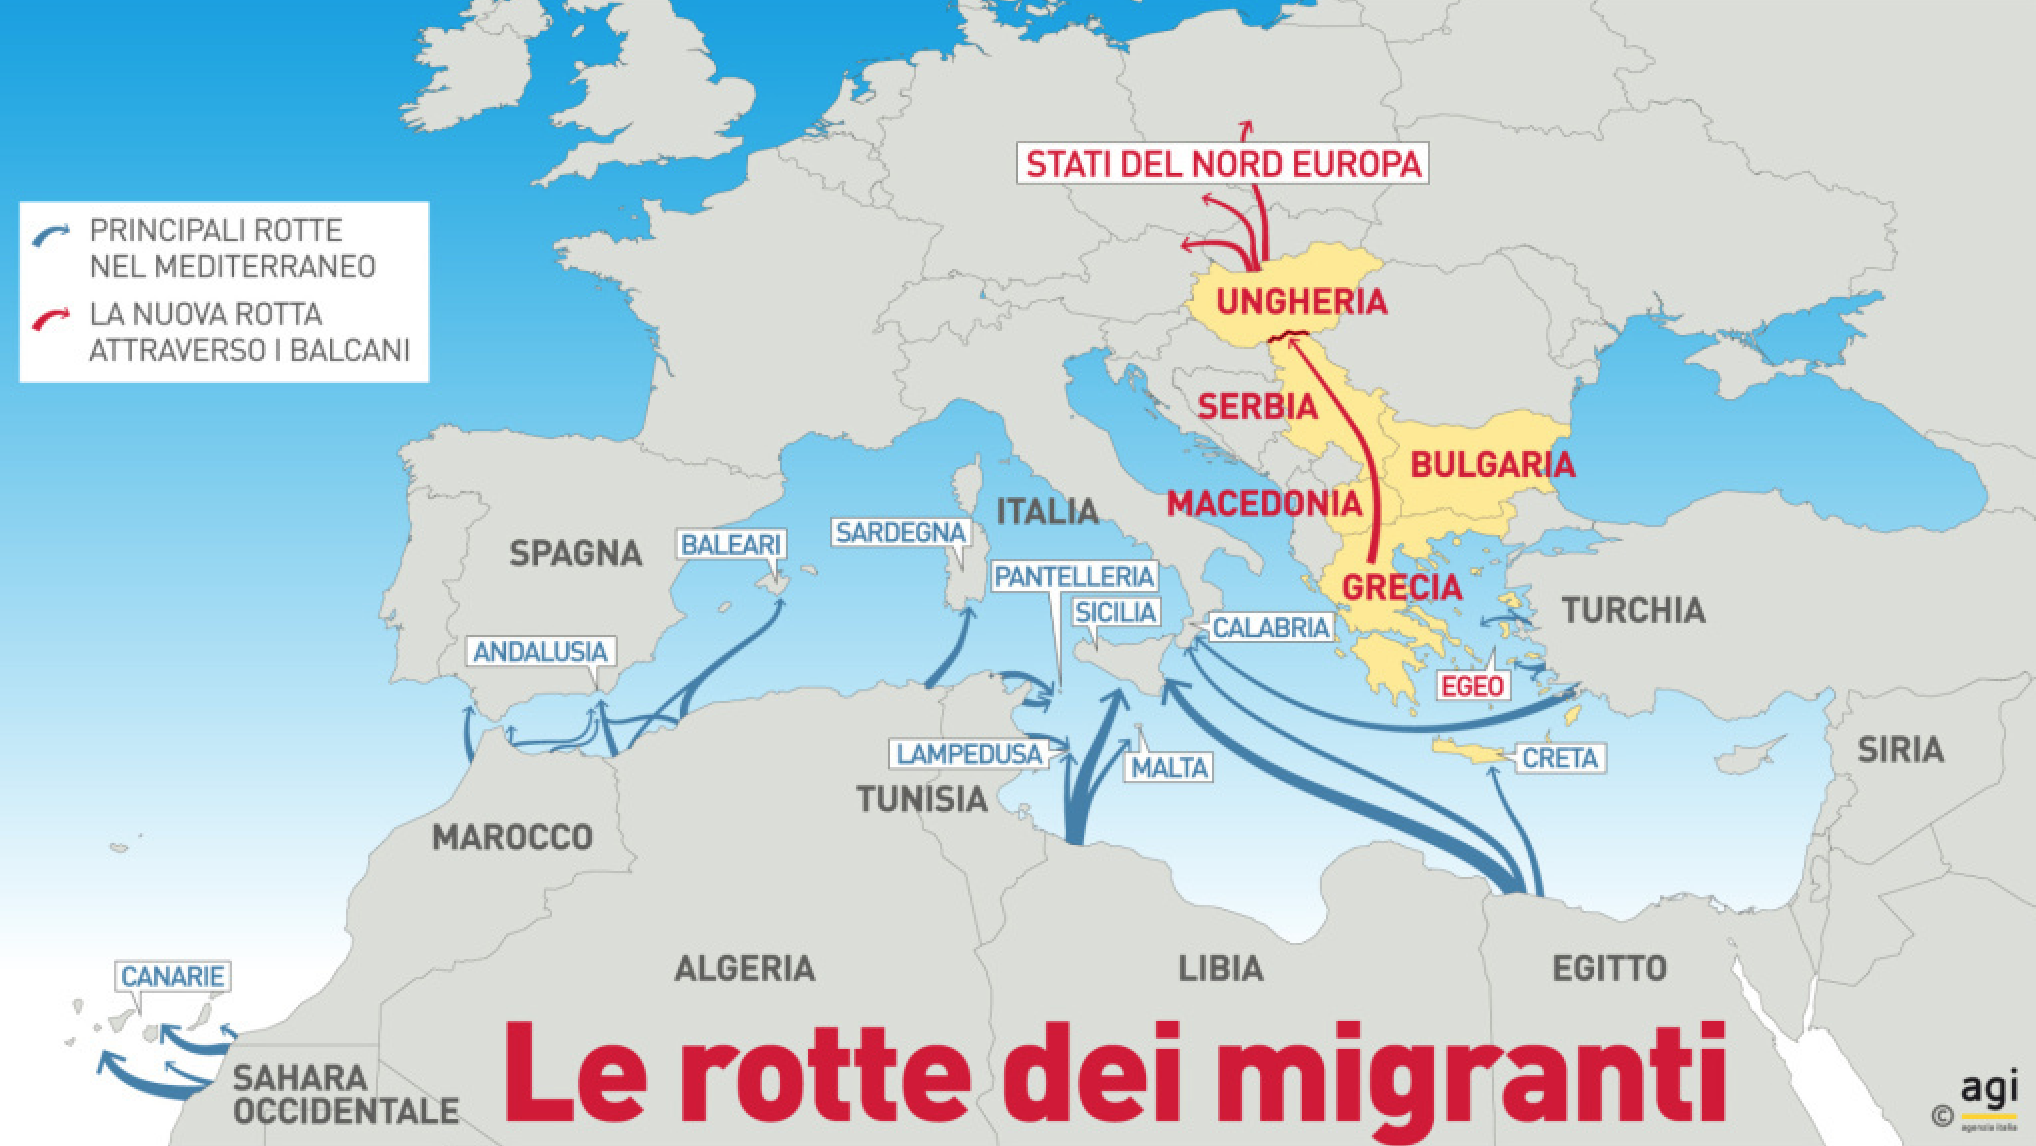 Le rotte dei migranti nel Mediterraneo verso l'Europa (studio AGI)